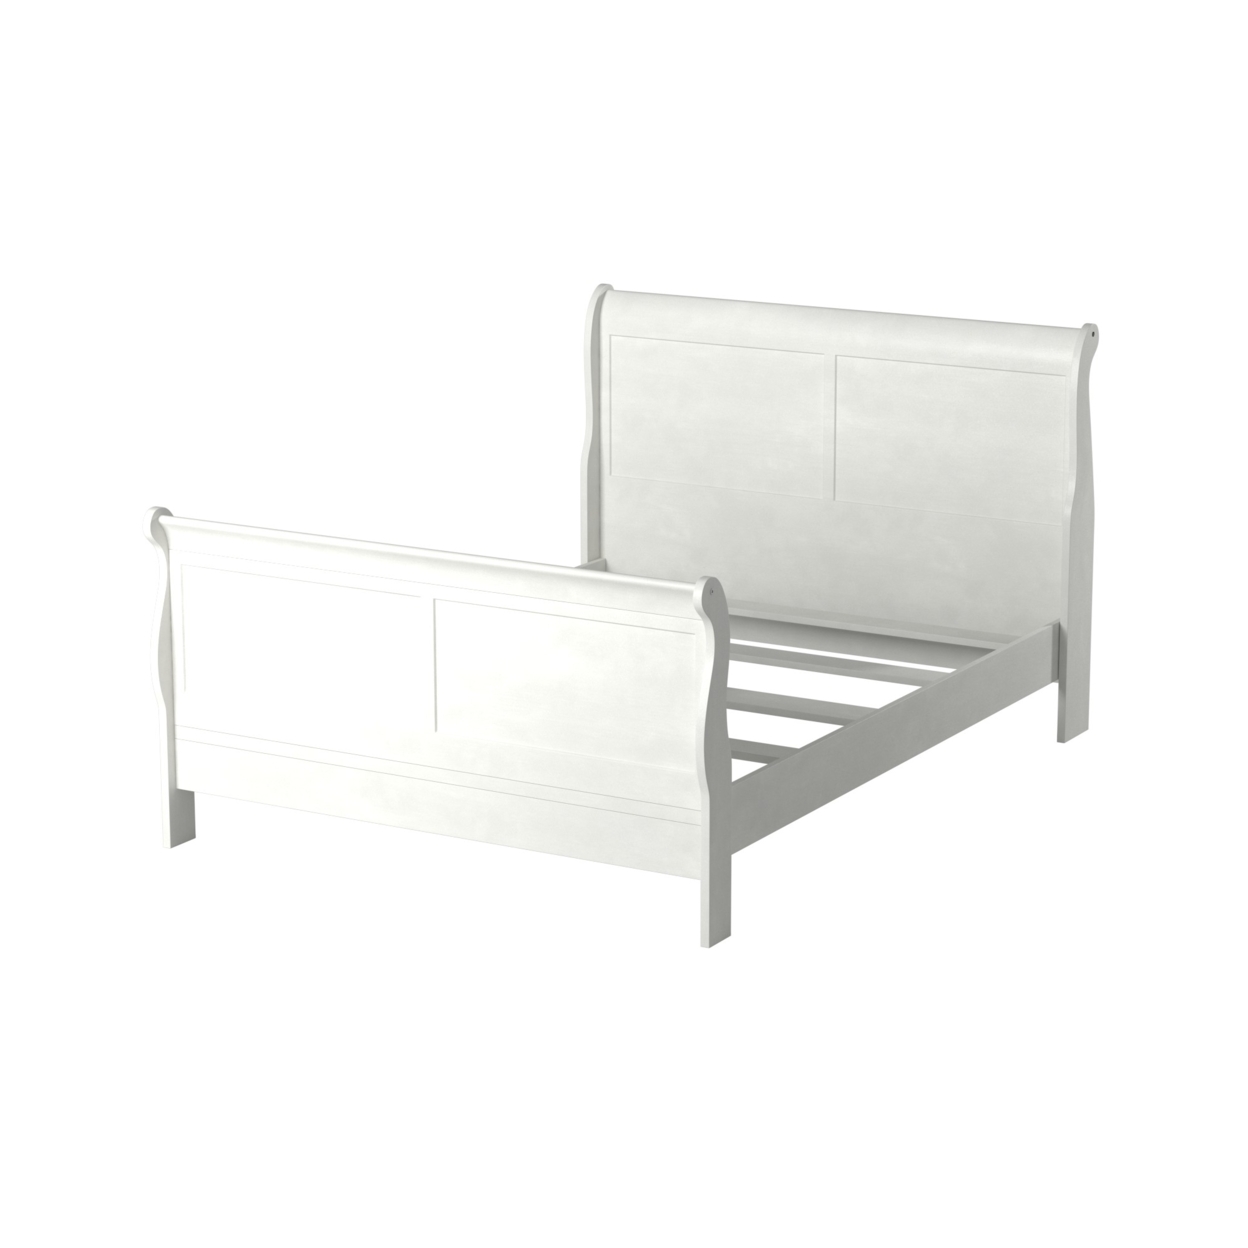 91 Inch Platform Queen Size Bed, Sleigh Panel Design, Pine Wood White